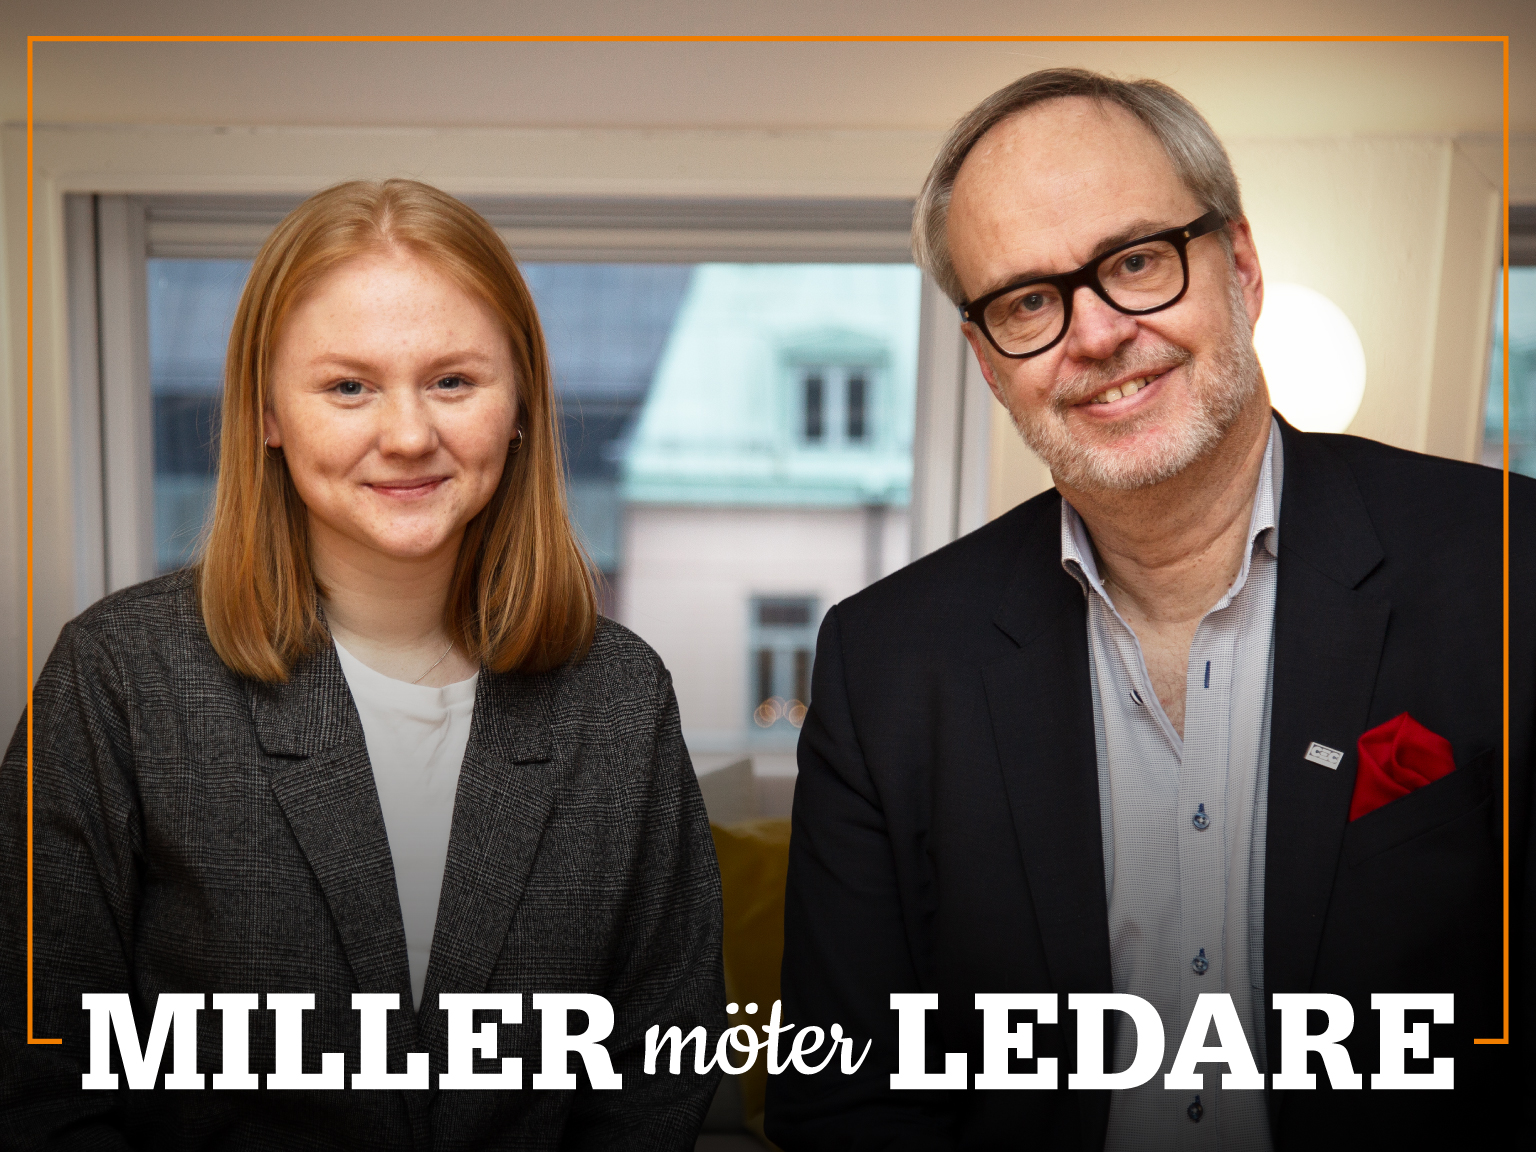 Omslag för podden Miller möter ledare – bild på Andreas Miller och Ida Alterå.